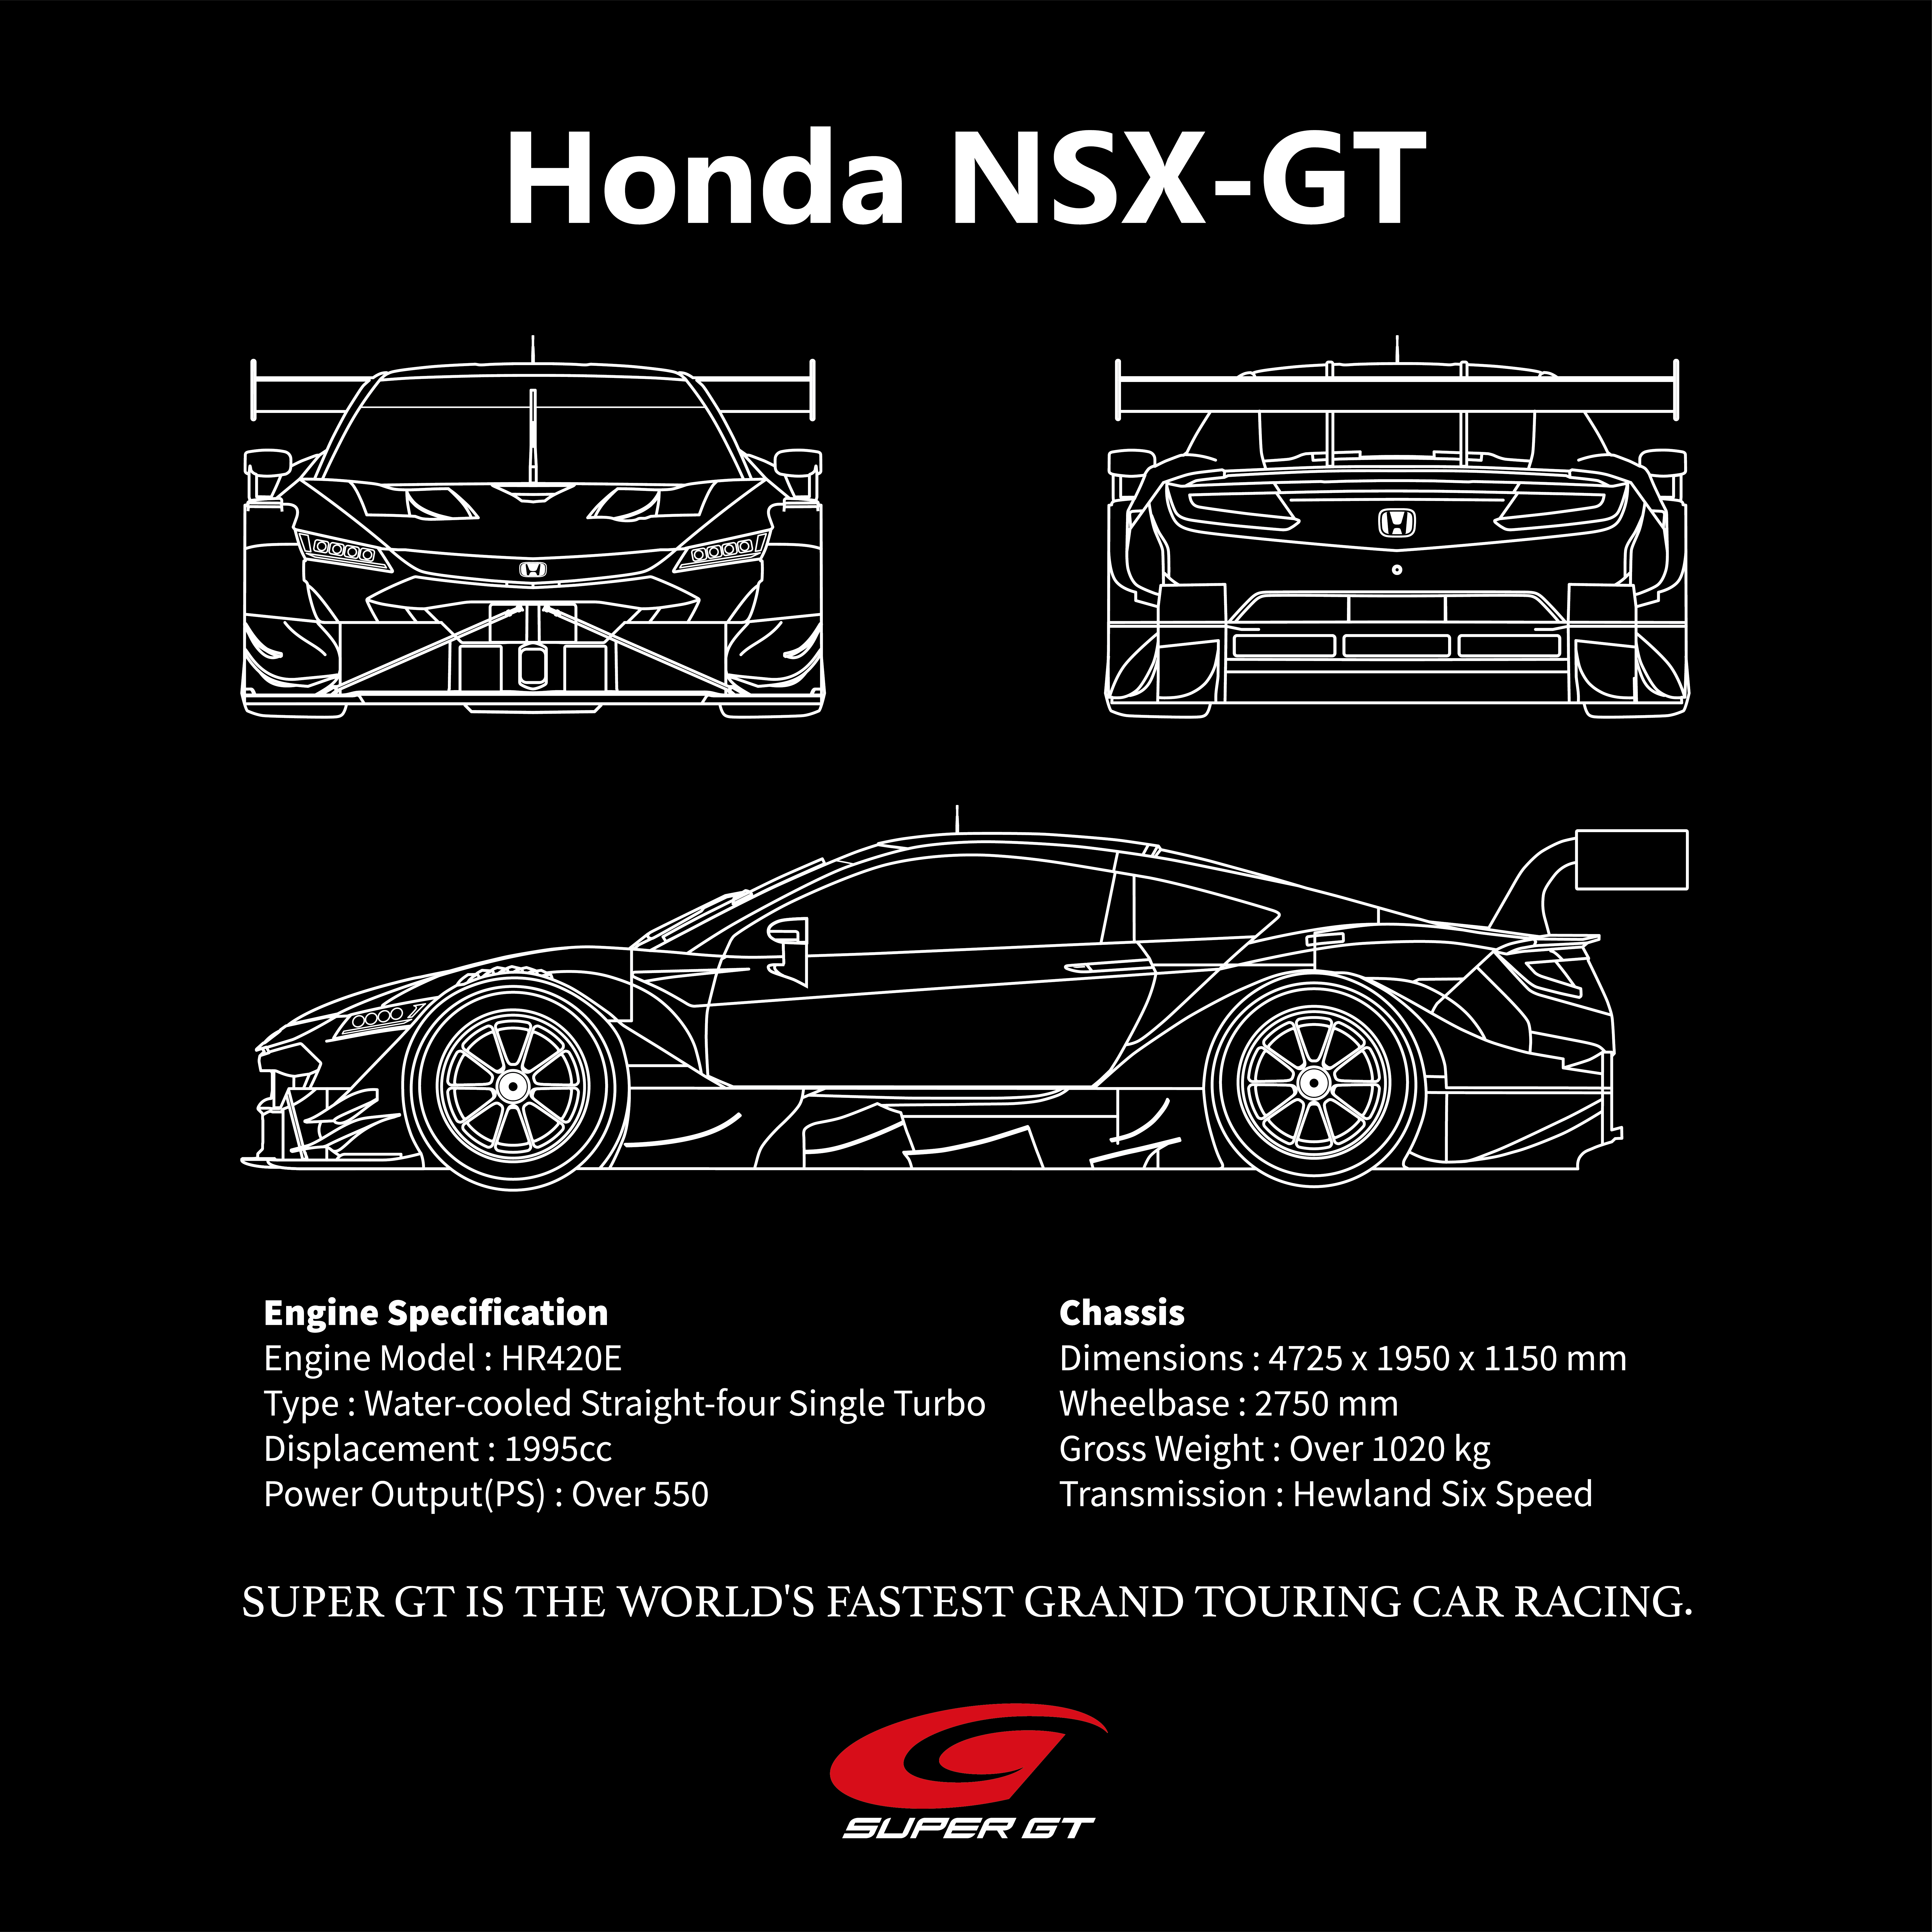 GT500マシン Tシャツ Honda（Mサイズ）